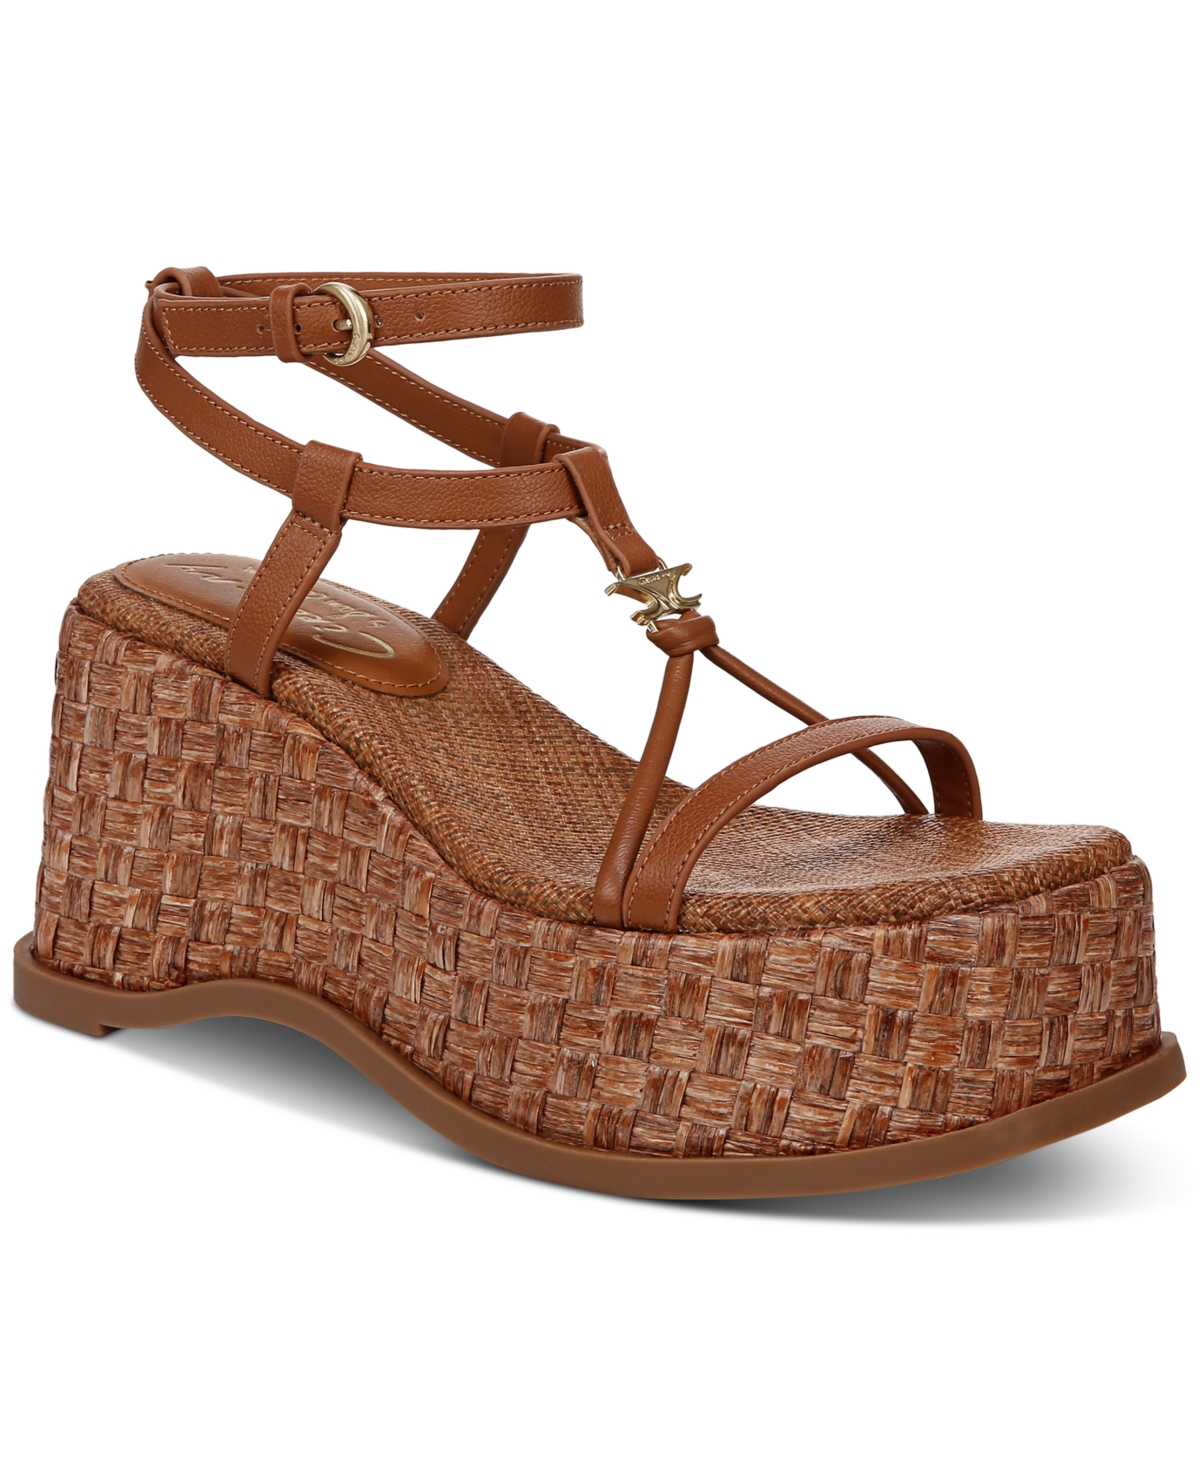 Odette Strappy Wedge Platform Sandals - Vanilla Bean